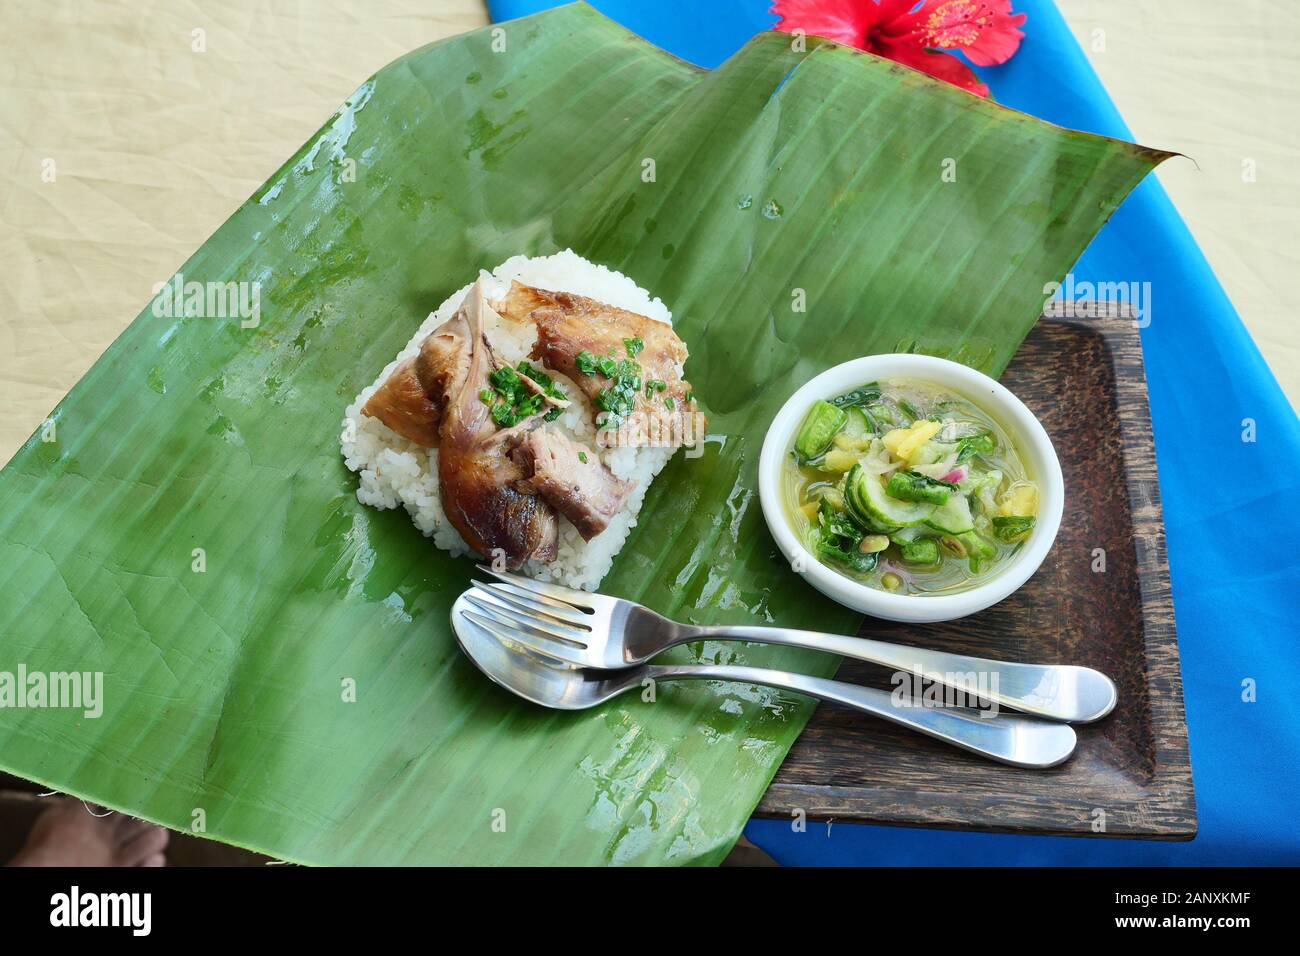 Poulet grillé avec riz avec cuillère et fourchette verte sur feuille de bananier, sauce à base de piment, le sel, le citron et l'ananas dans un plat blanc Banque D'Images